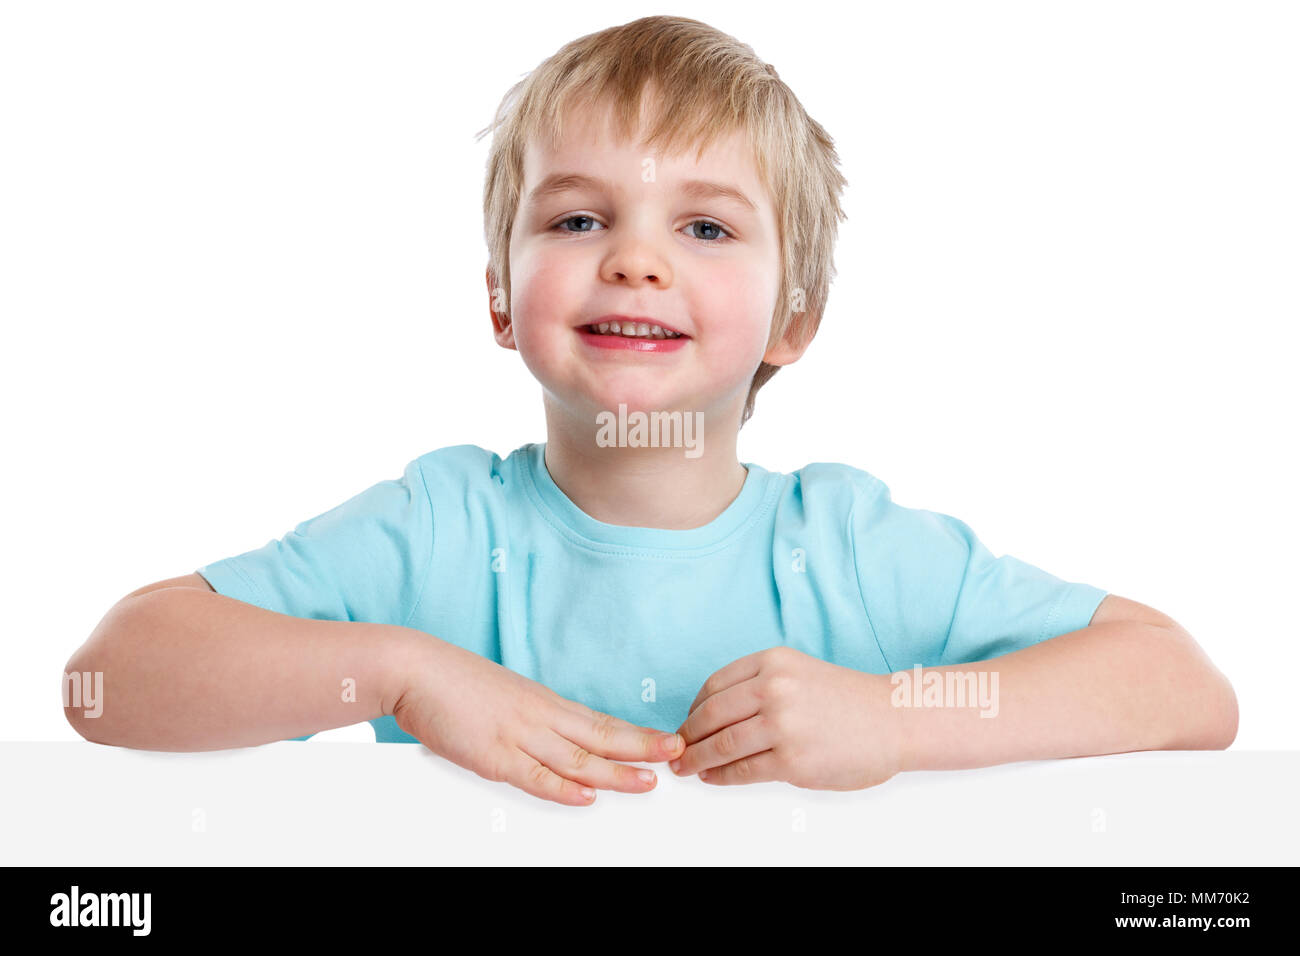 Bambino kid sorridente giovane ragazzino copyspace marketing vuoto vuoto segno isolato su uno sfondo bianco Foto Stock